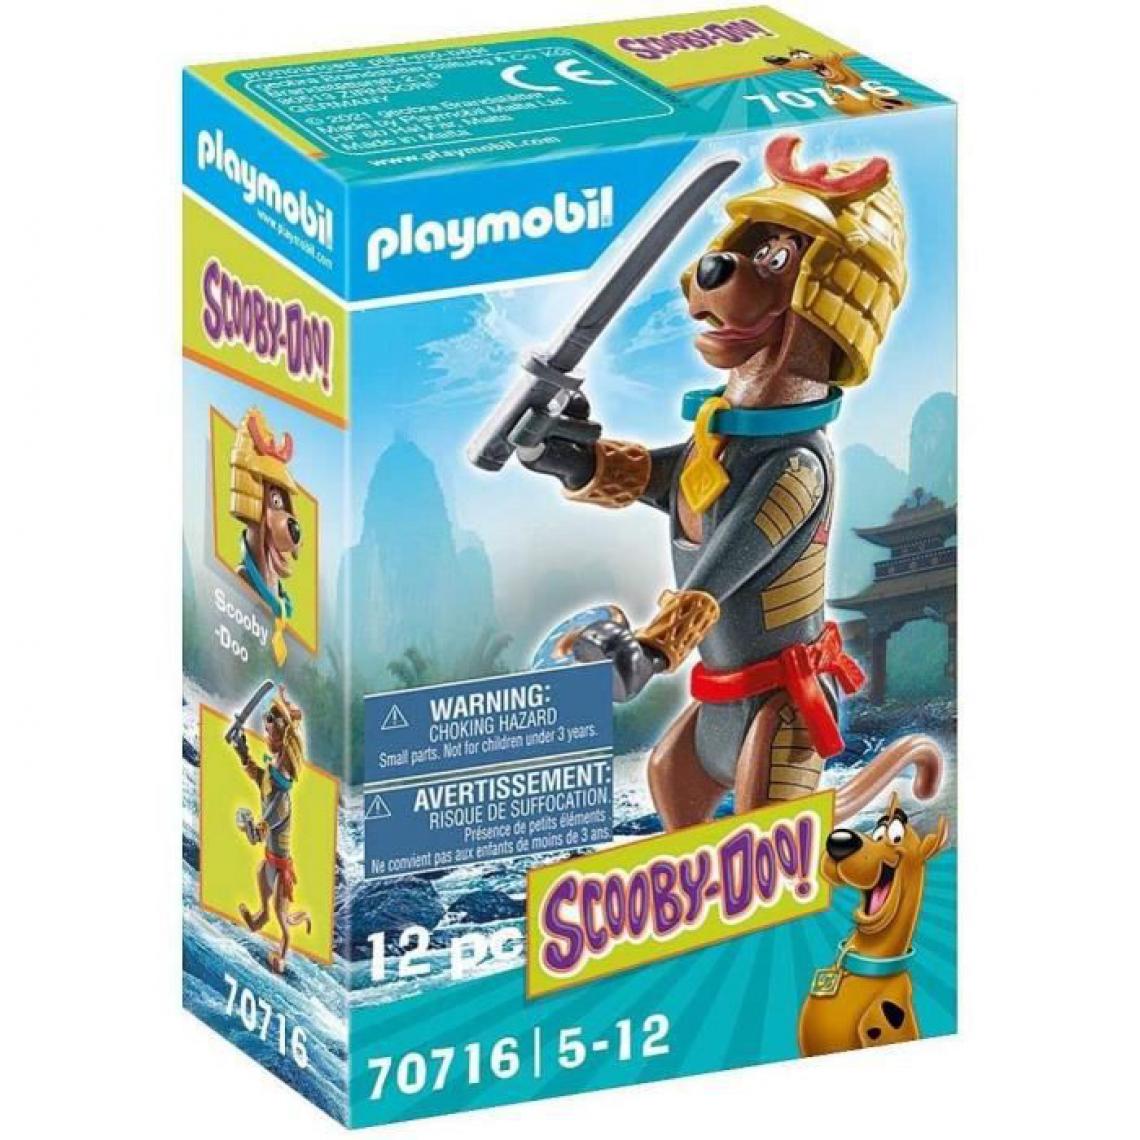 Playmobil - PLAYMOBIL - 70716 - SCOOBY-DOO Samurai - Accessoires et pièces